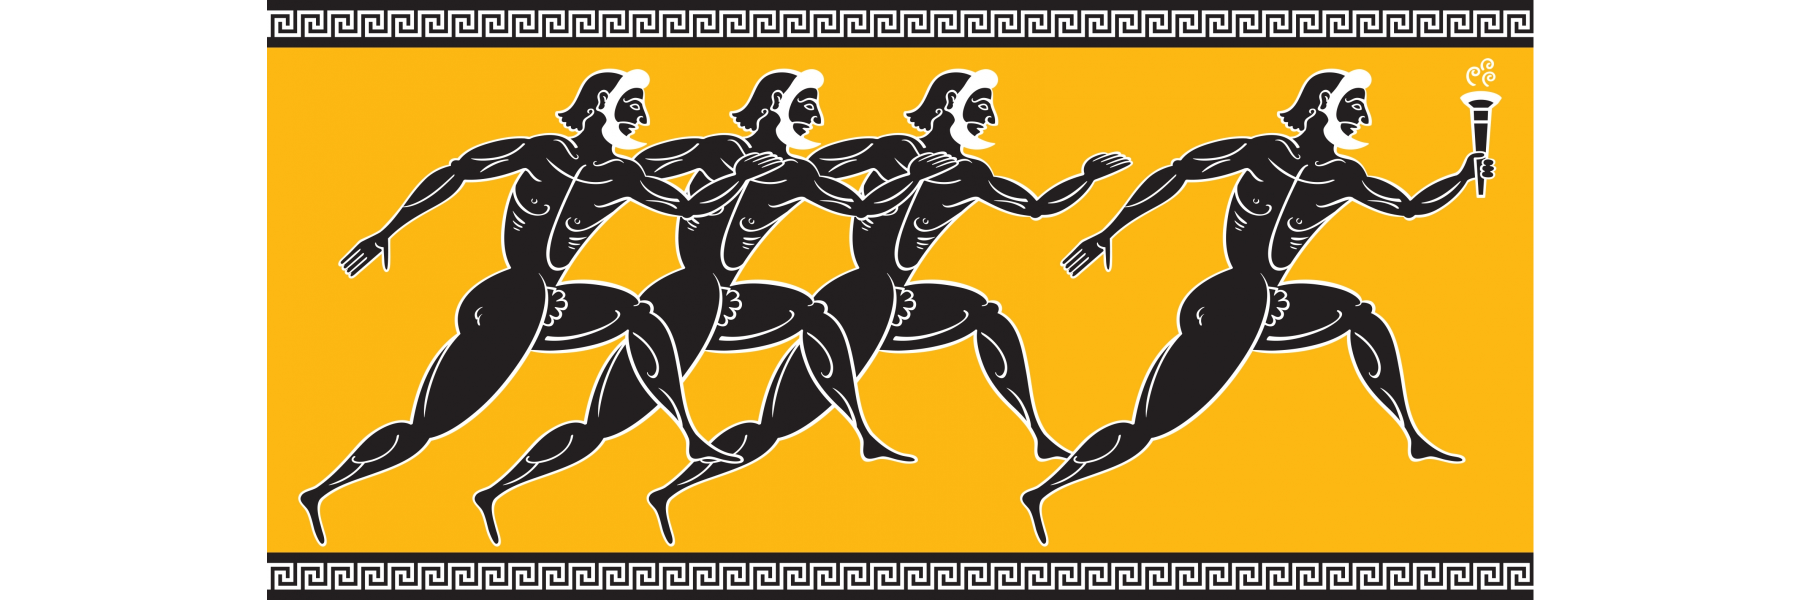 Первый олимпийский бегун. Олимпийские бегуны древней Греции. Марафонский бегун древней Греции. Олимпийские атлеты древней Греции. Олимпийский бегун в древней Греции.